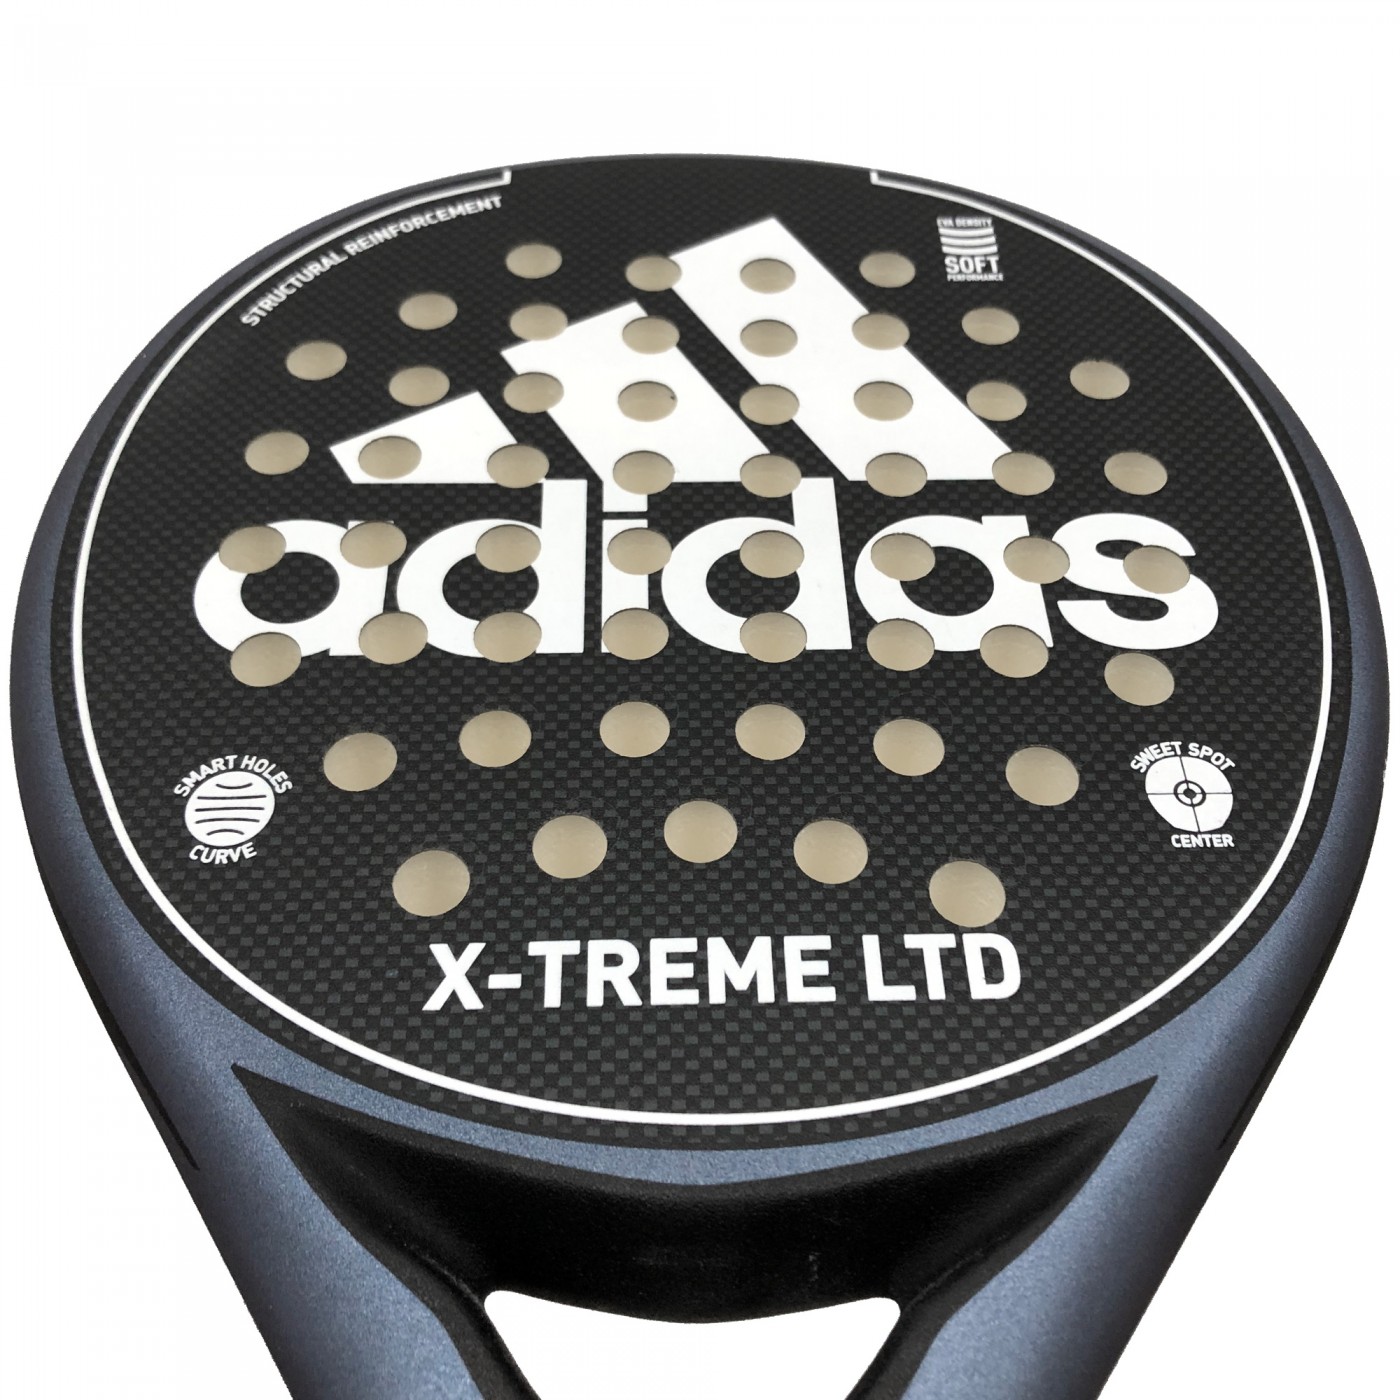 Pala De Pádel adidas X-treme Ltd Black/white